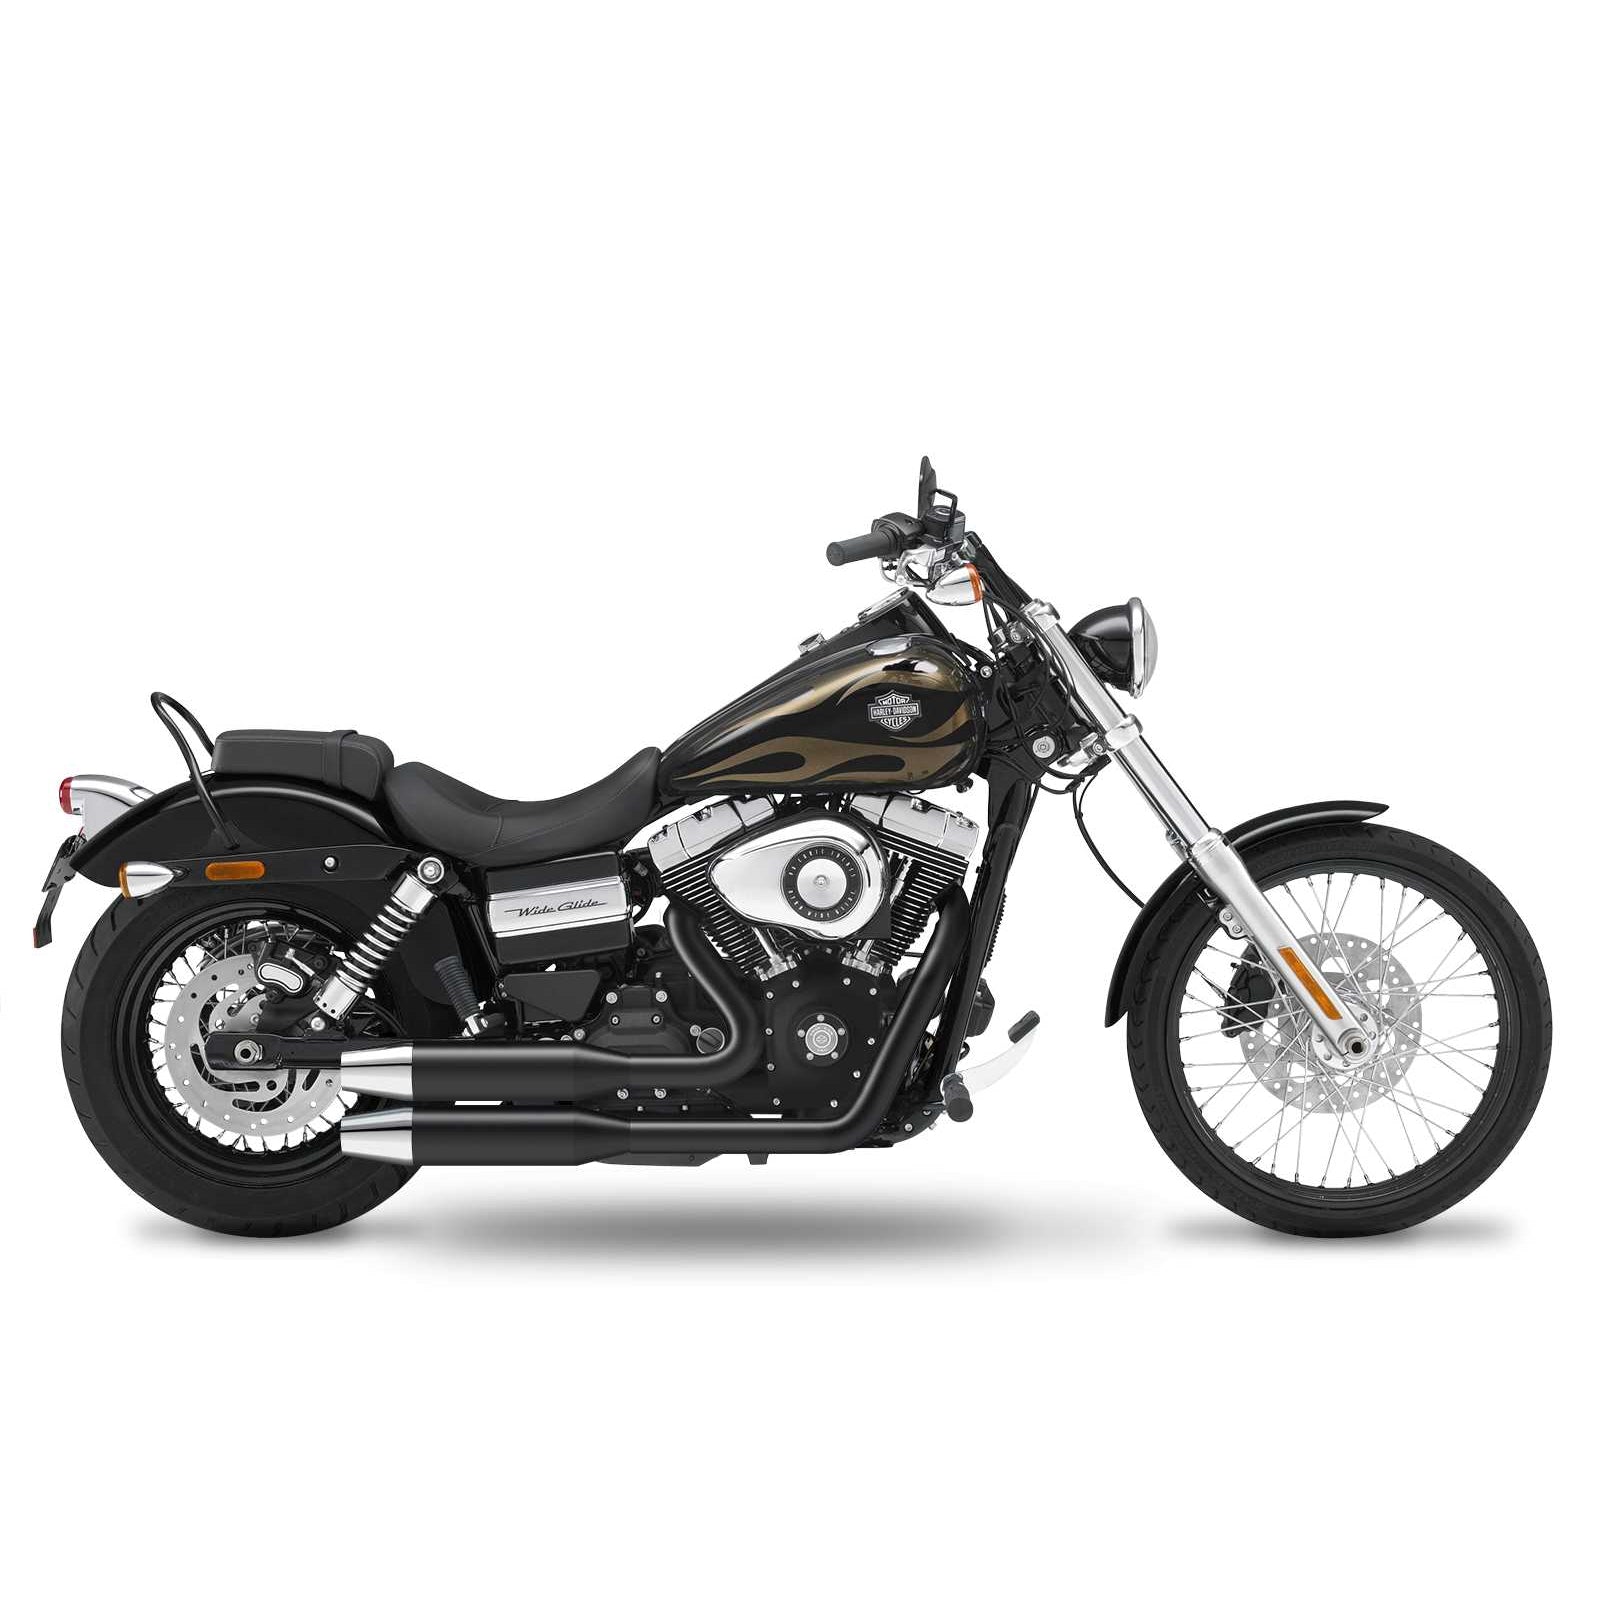 Кesstech 2017 Harley-Davidson Wide Glide Complete systems adjustable